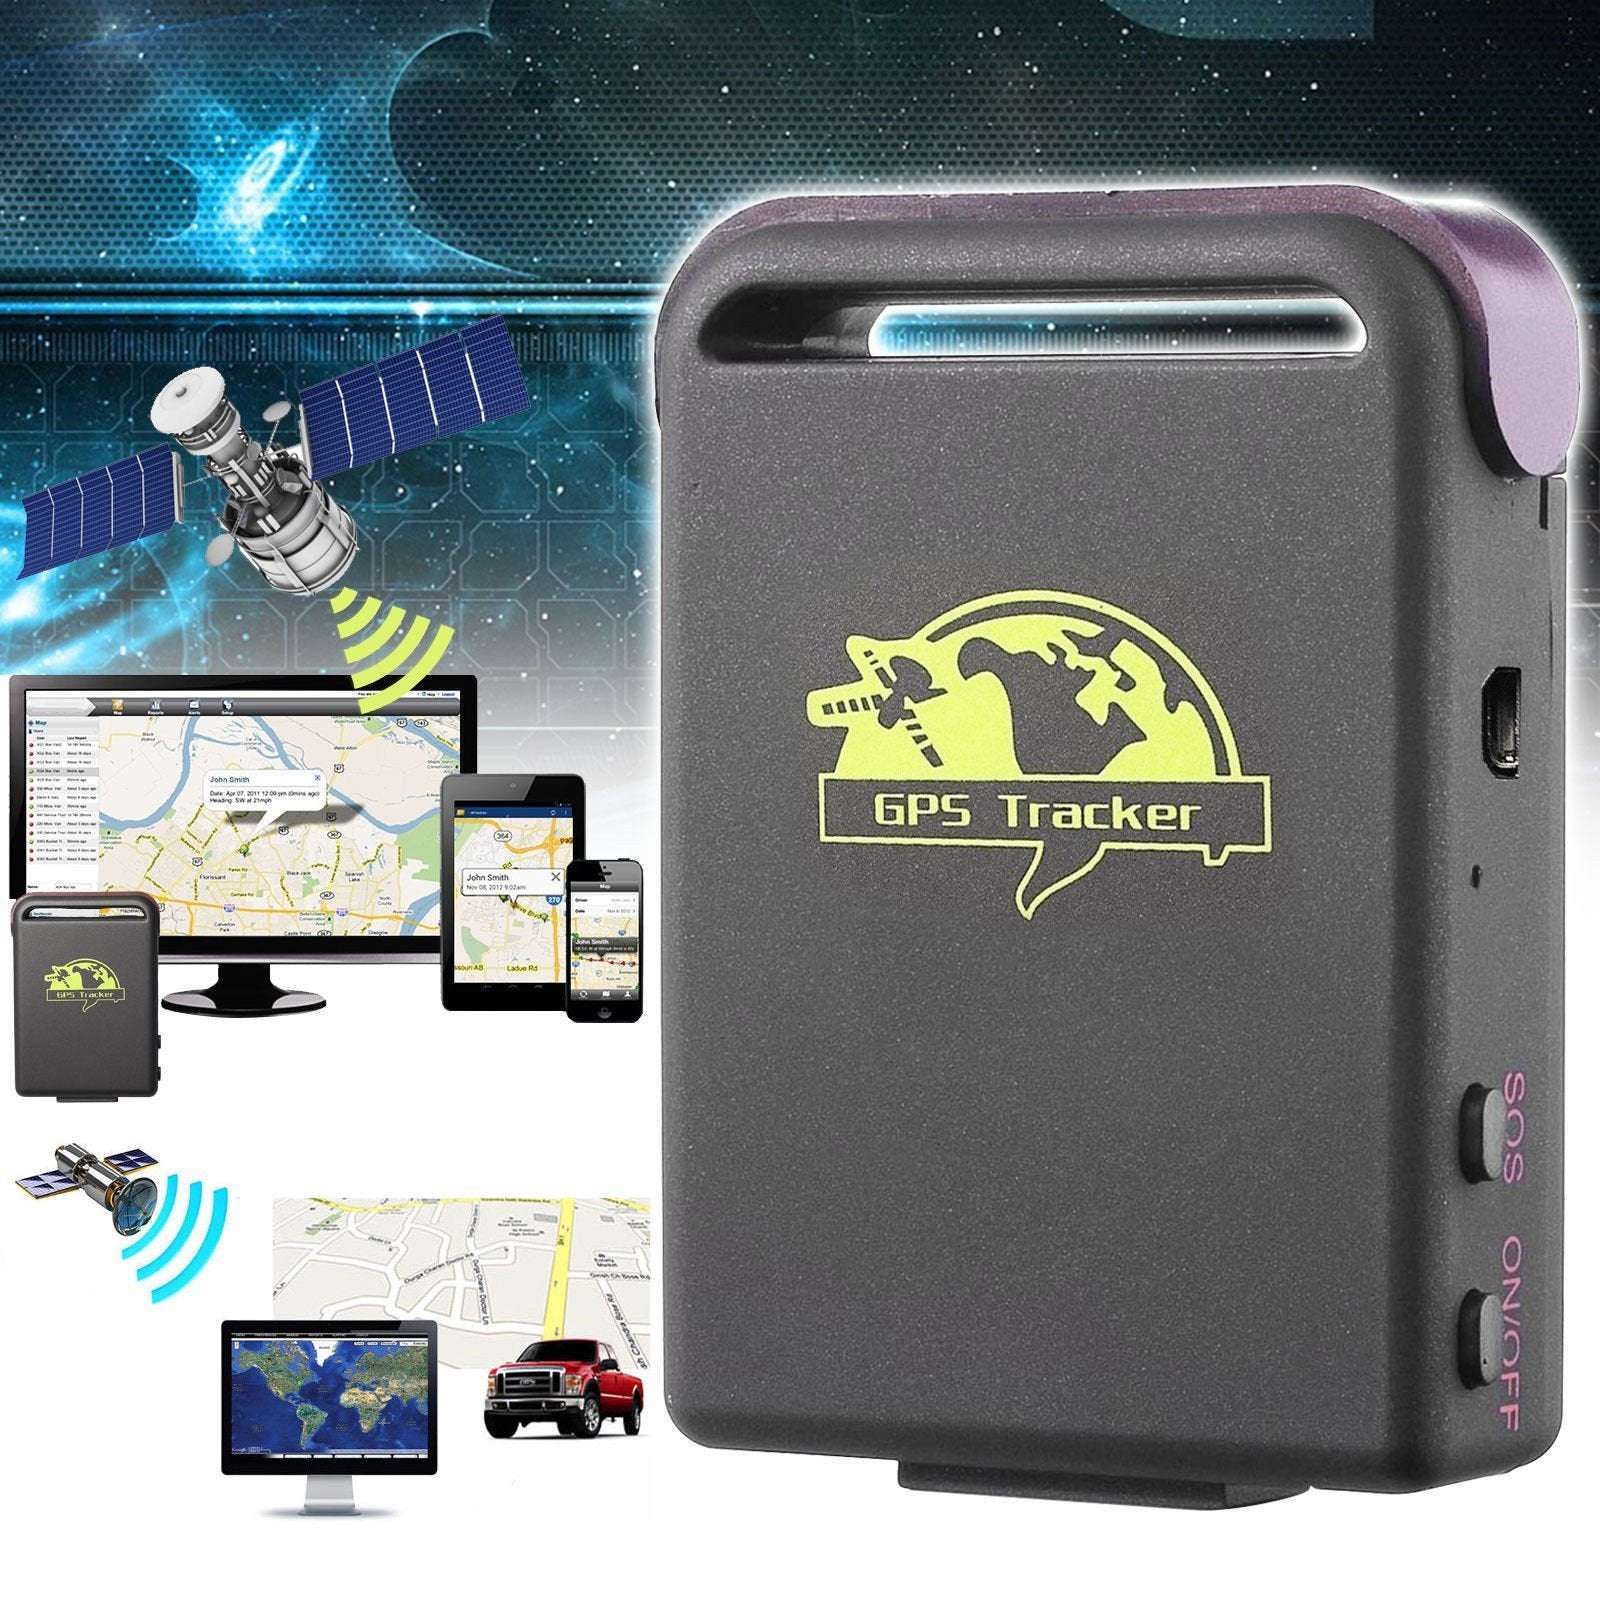 Mouchard pour écoute discrète multifonctions et tracker GPS 